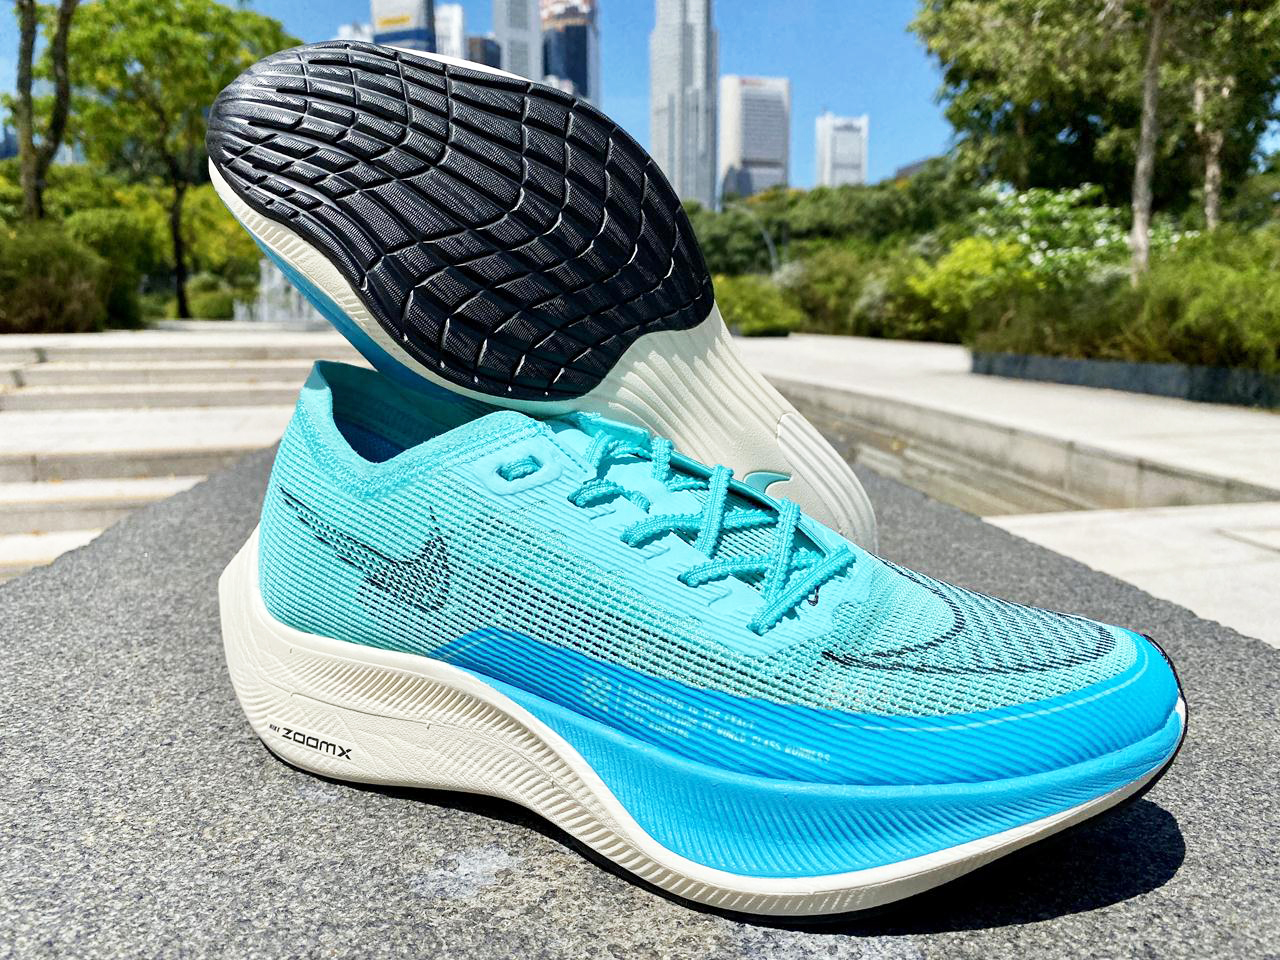 Giày chạy bộ Nike ZoomX Vaporfly Next% 2